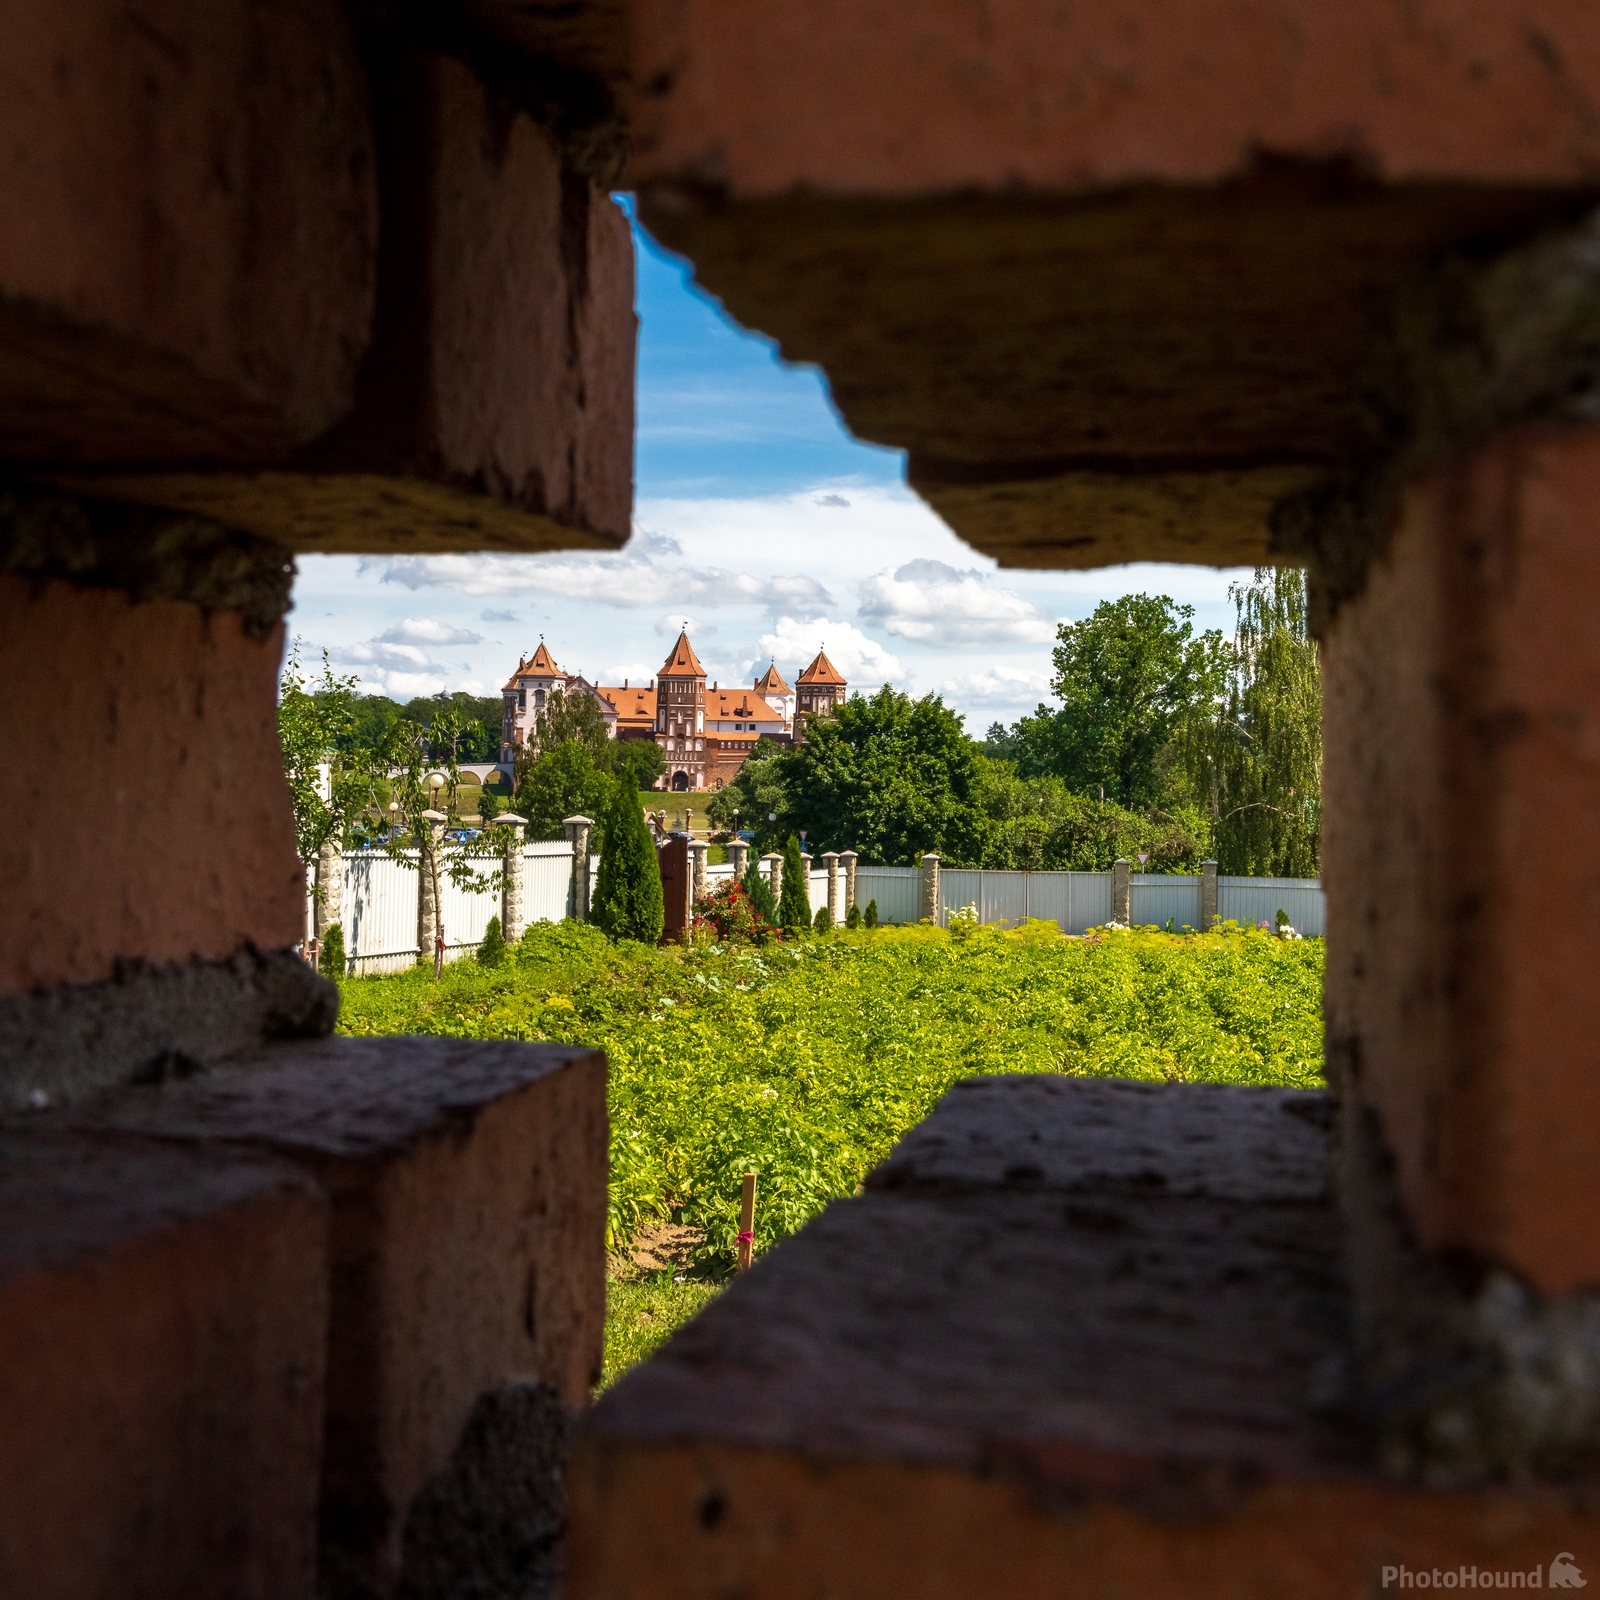 Image of Mir Castle, Belarus by Ilya Melnik